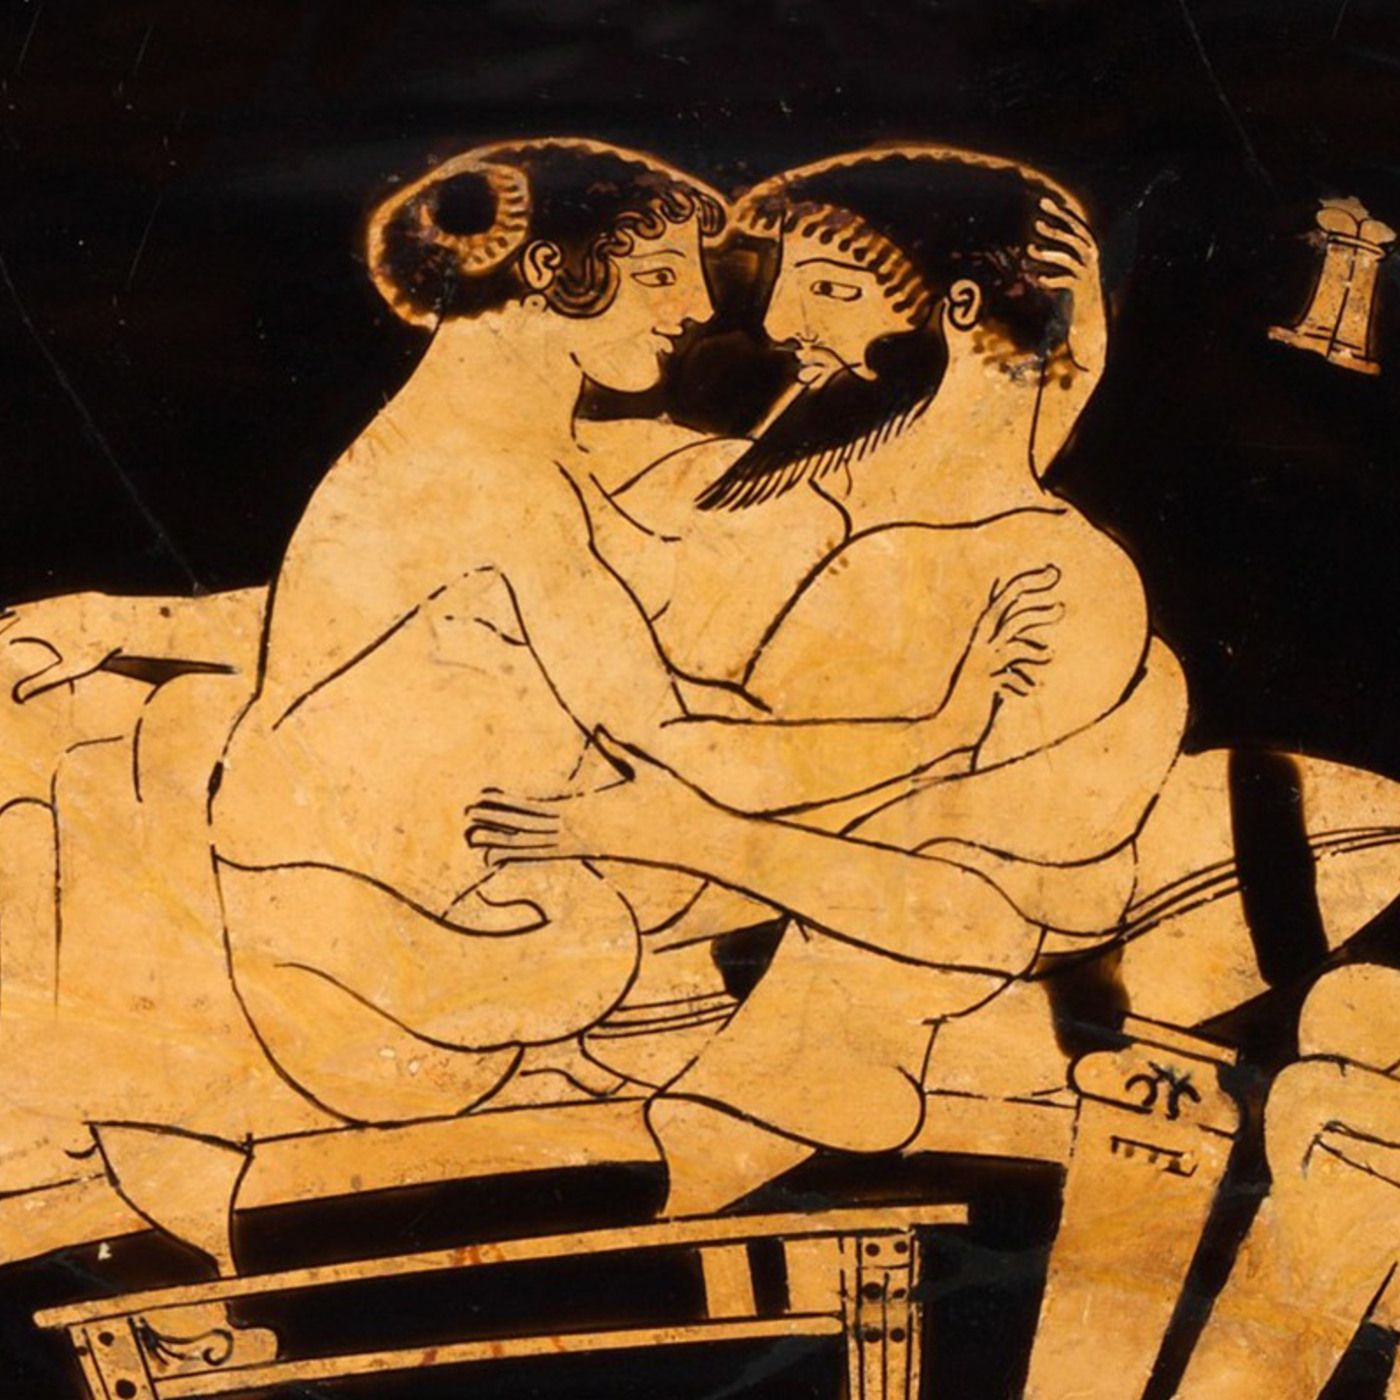 История сексуальности. Лекция 2. Античность: «Гробница порки», гетеры и женская солидарность (18+)